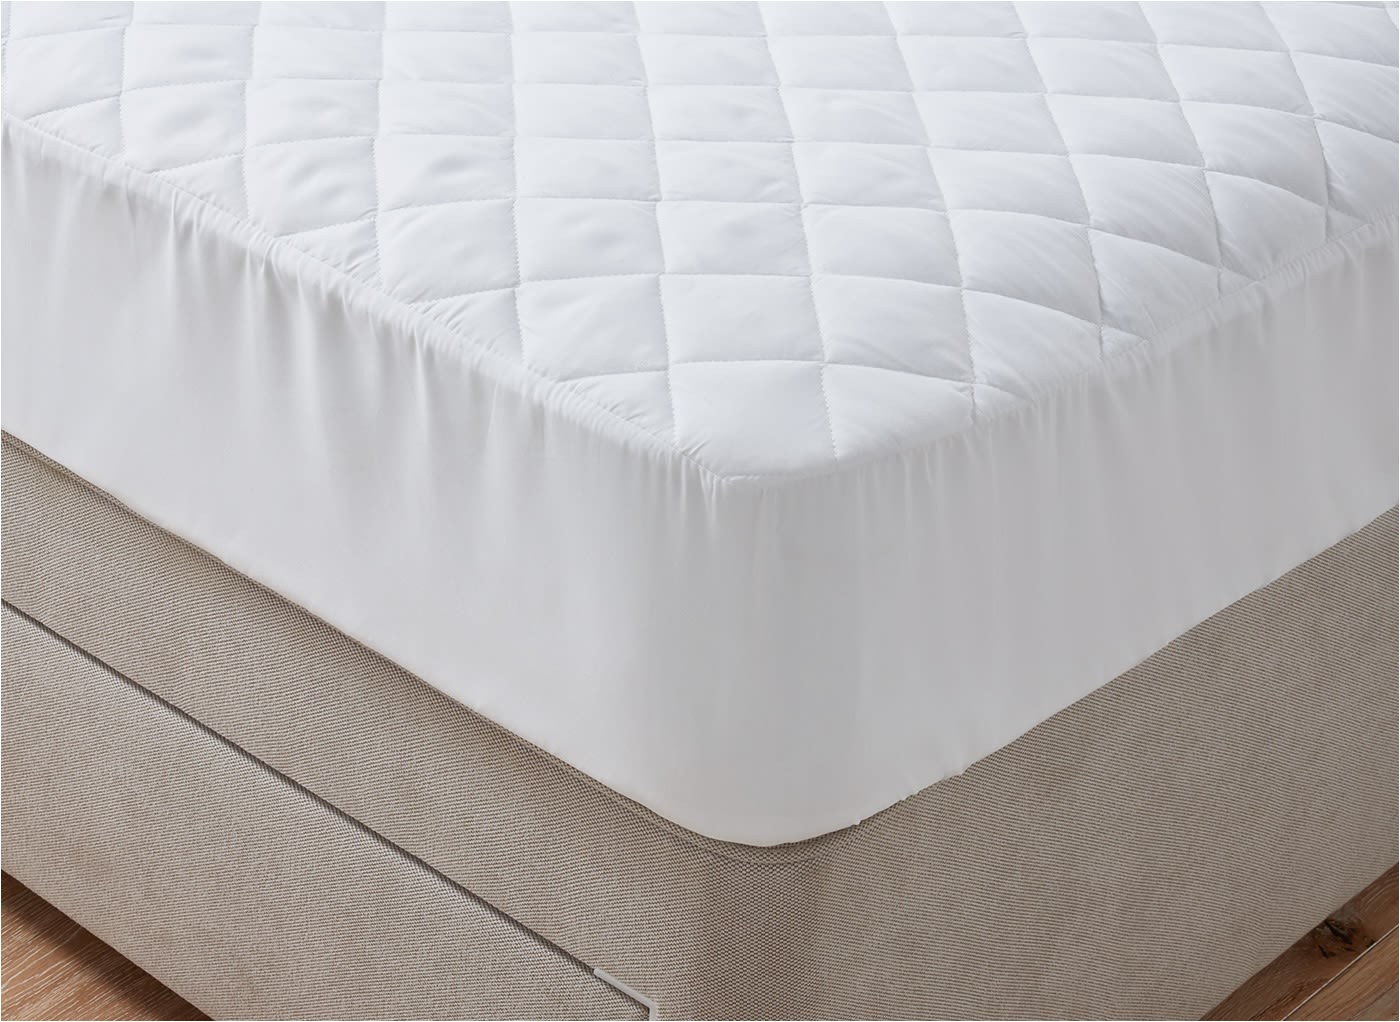 doze waterproof mattress protector